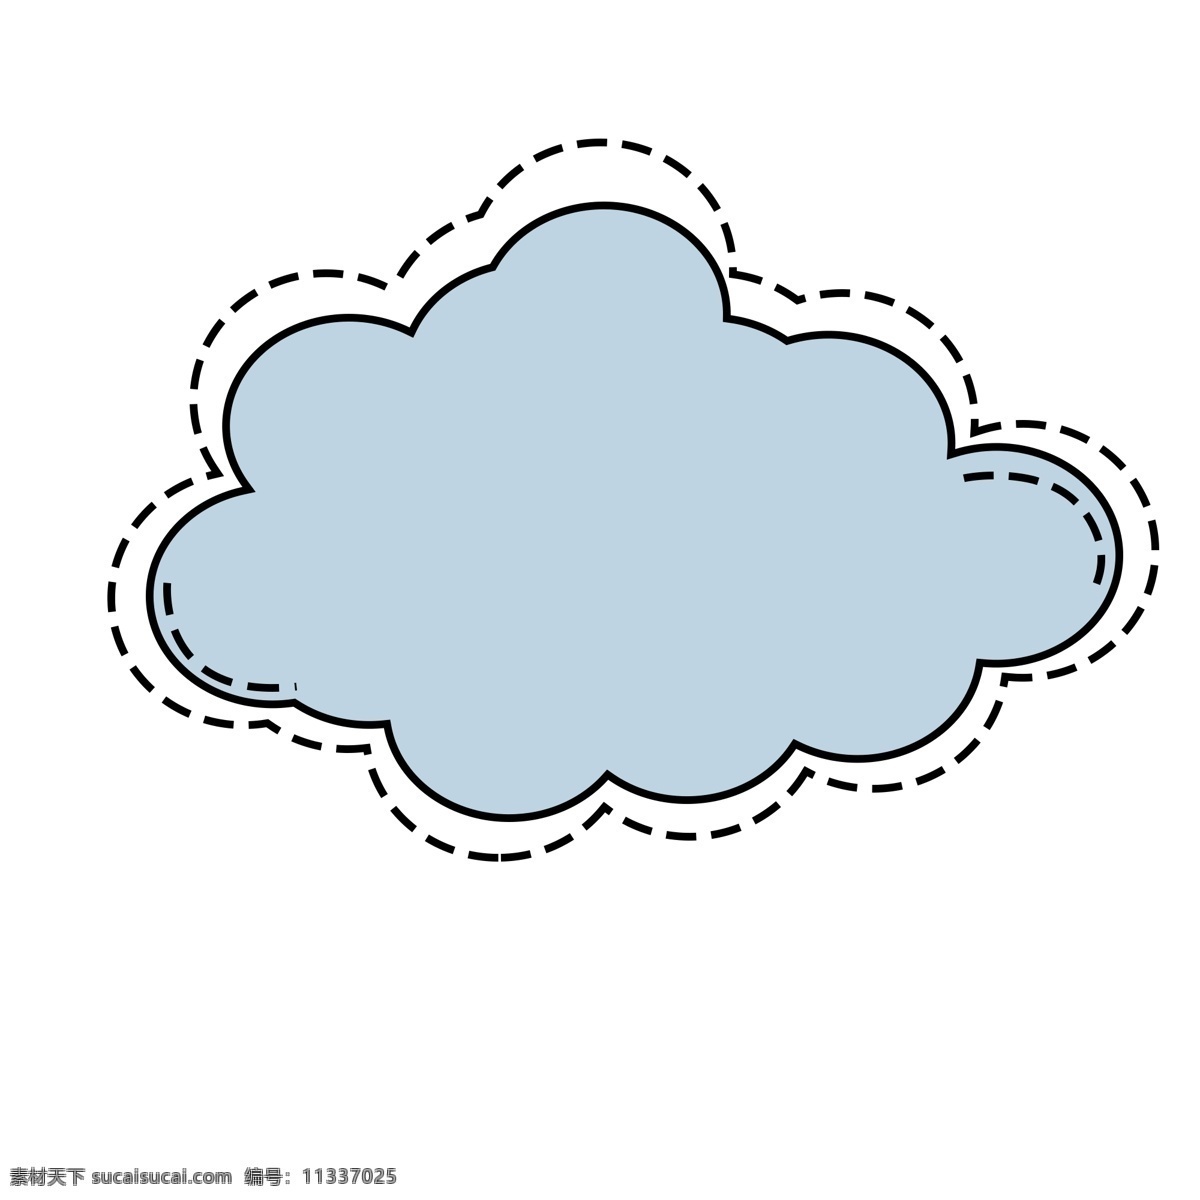 蓝色 云朵 可爱 简约 对话 气泡 框 蓝色云朵 蓝色对话框 云朵对话框 蓝色气泡框 云朵气泡框 可爱云朵框子 免 扣 对话框